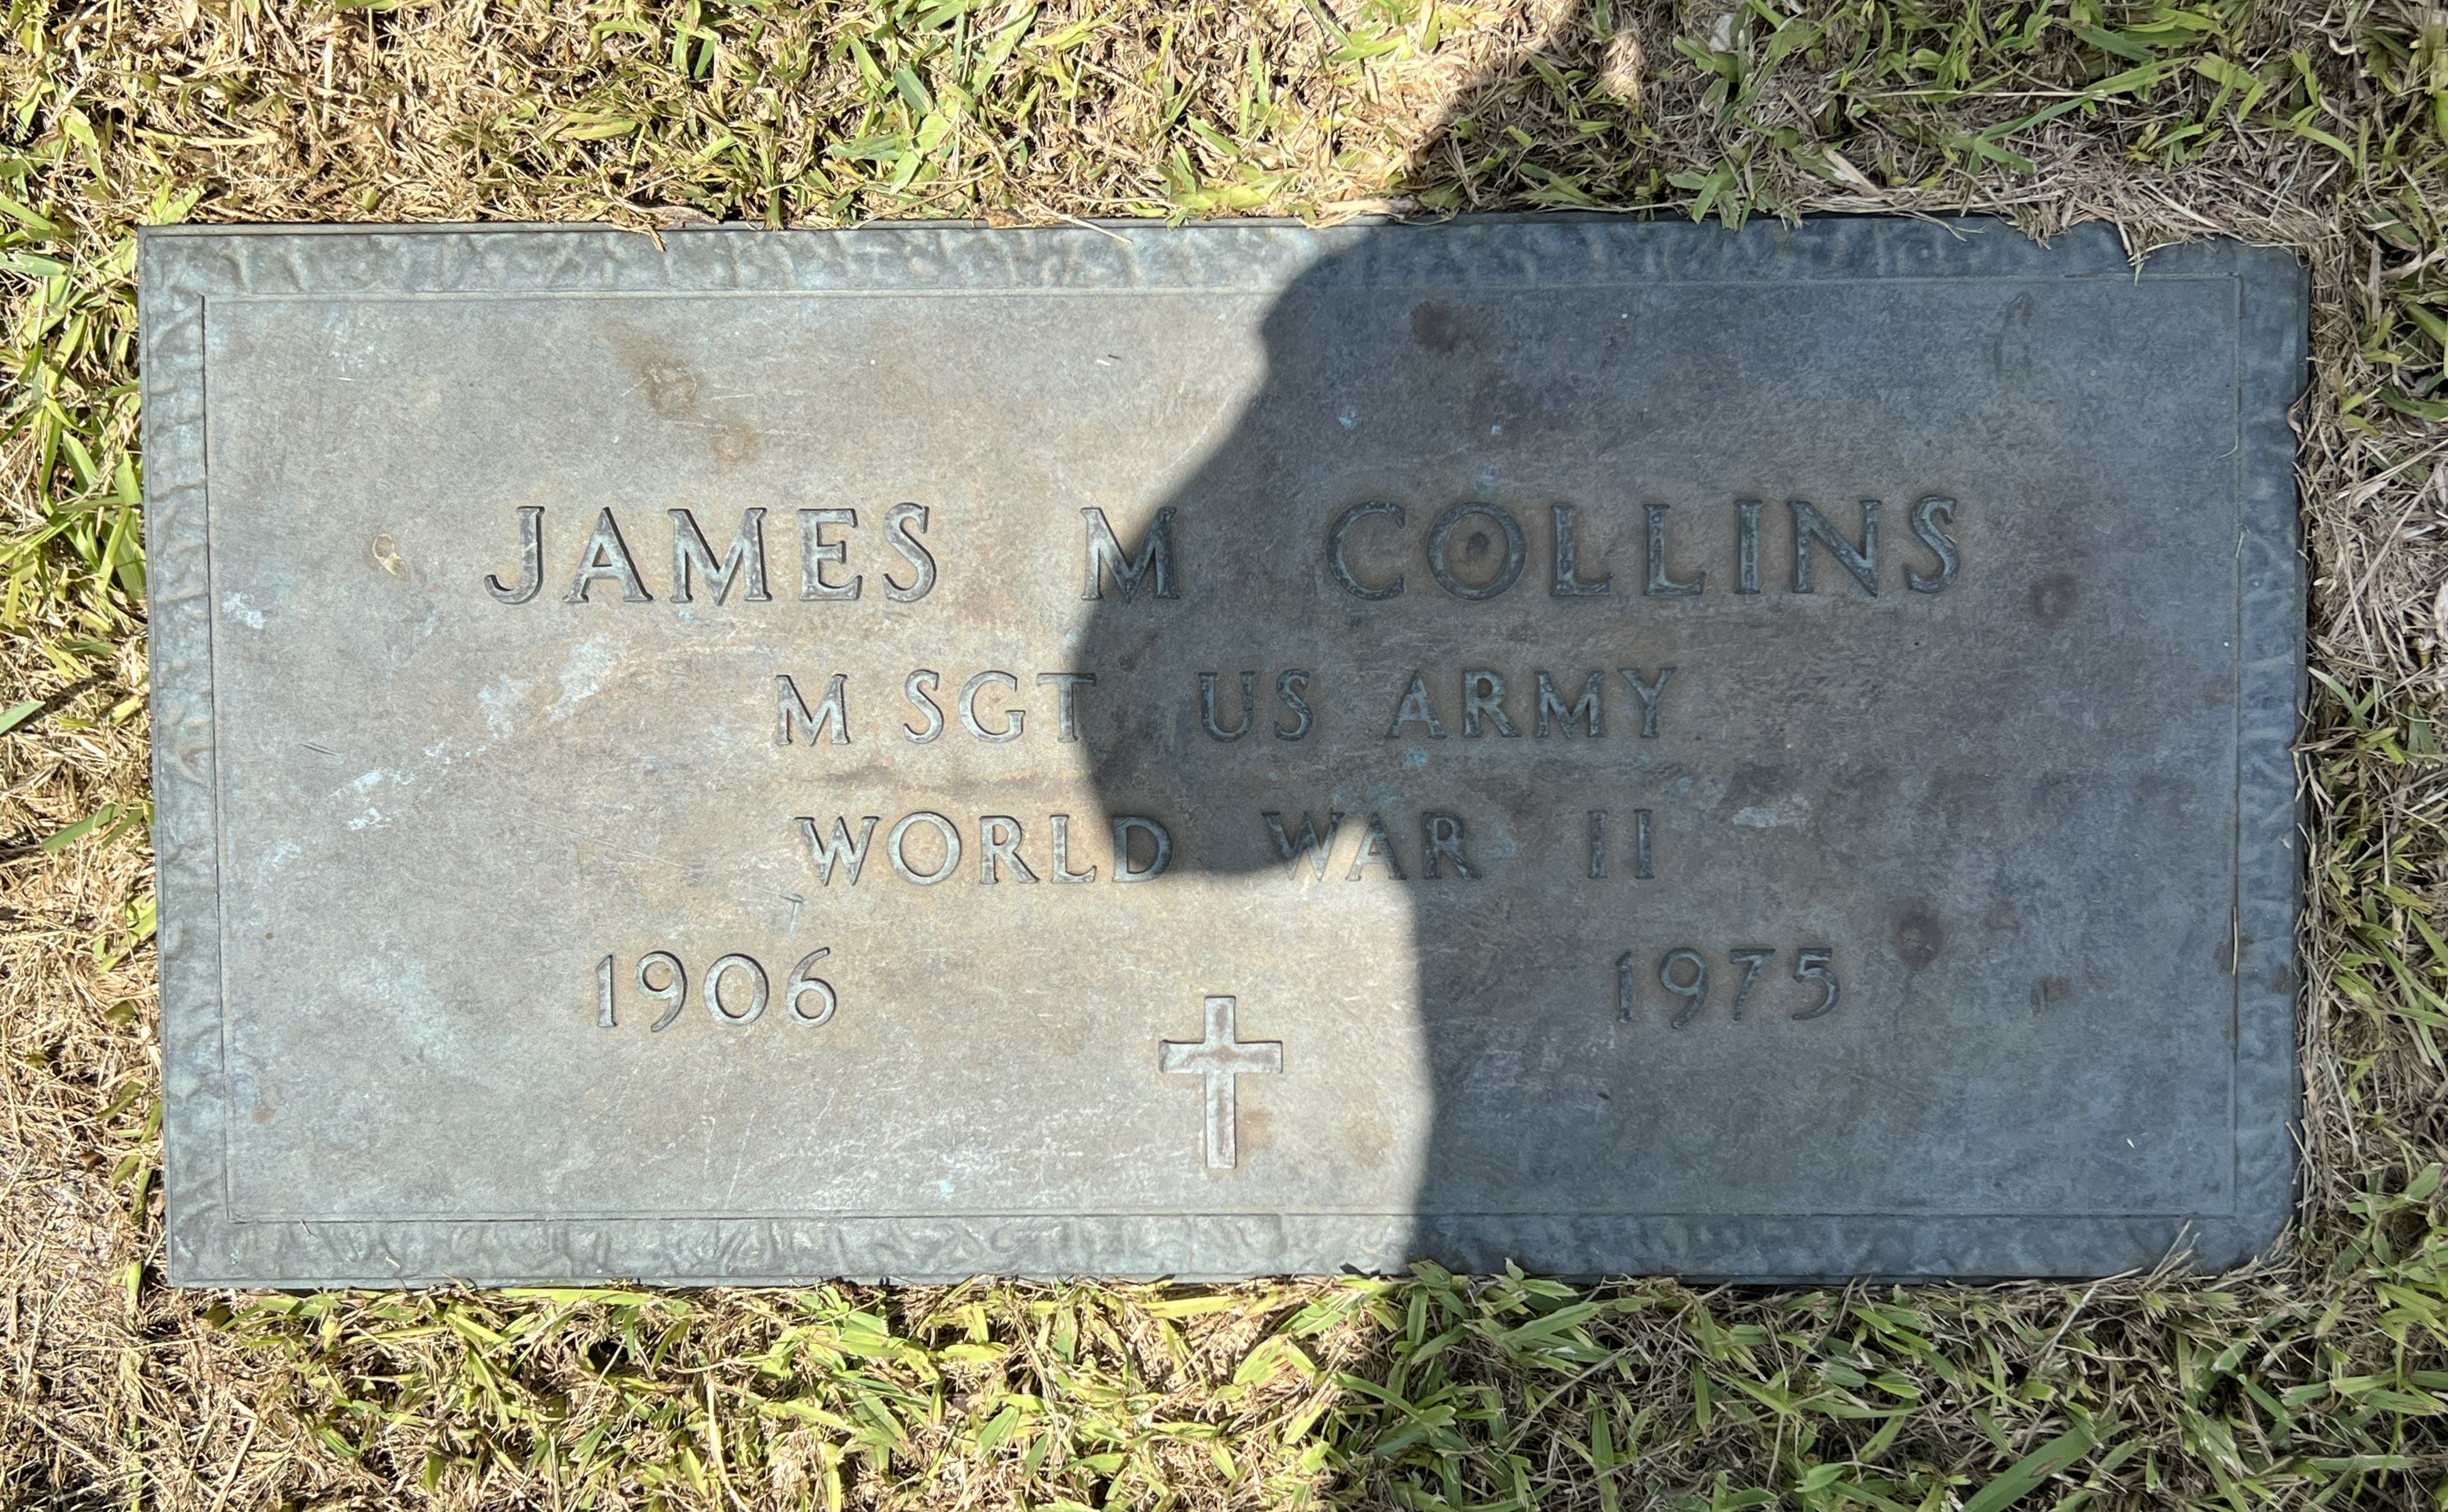 Sgt James M Collins